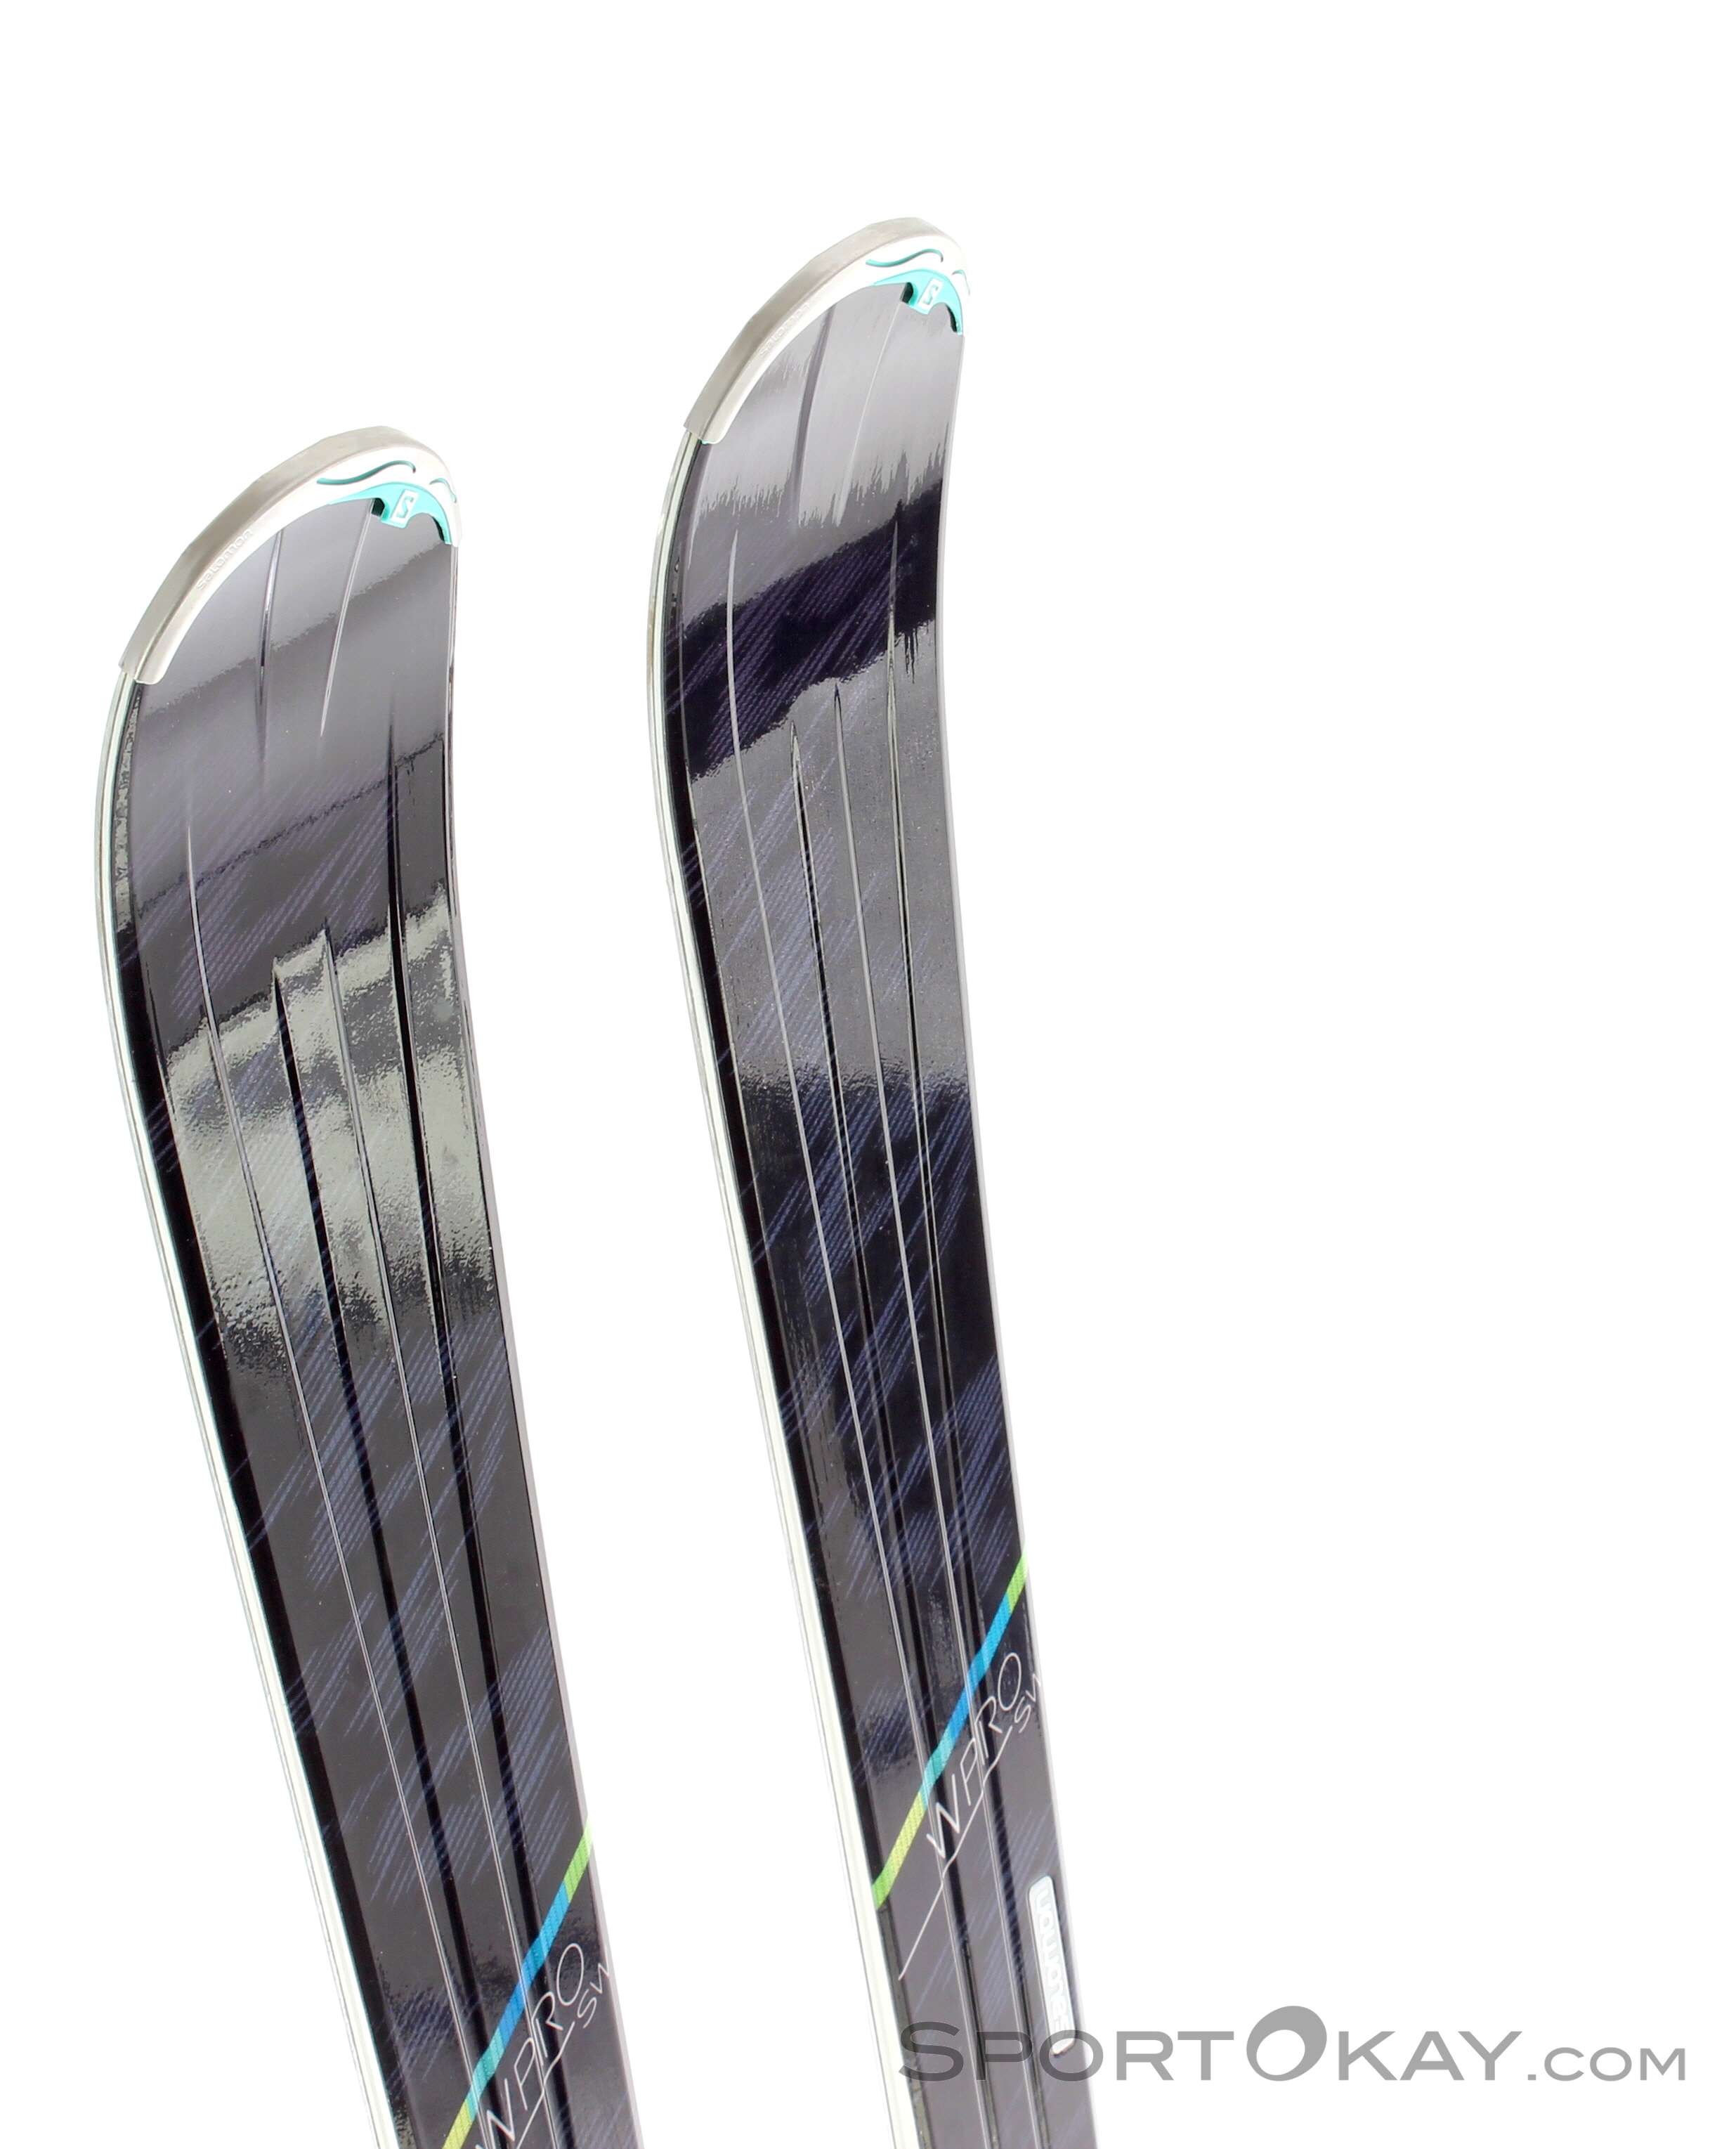 Celsius Petulance Slepen Salomon W Pro SW + XT 10 Damen Skiset 2016 - Alpine Skis - Skis - Ski &  Freeride - All